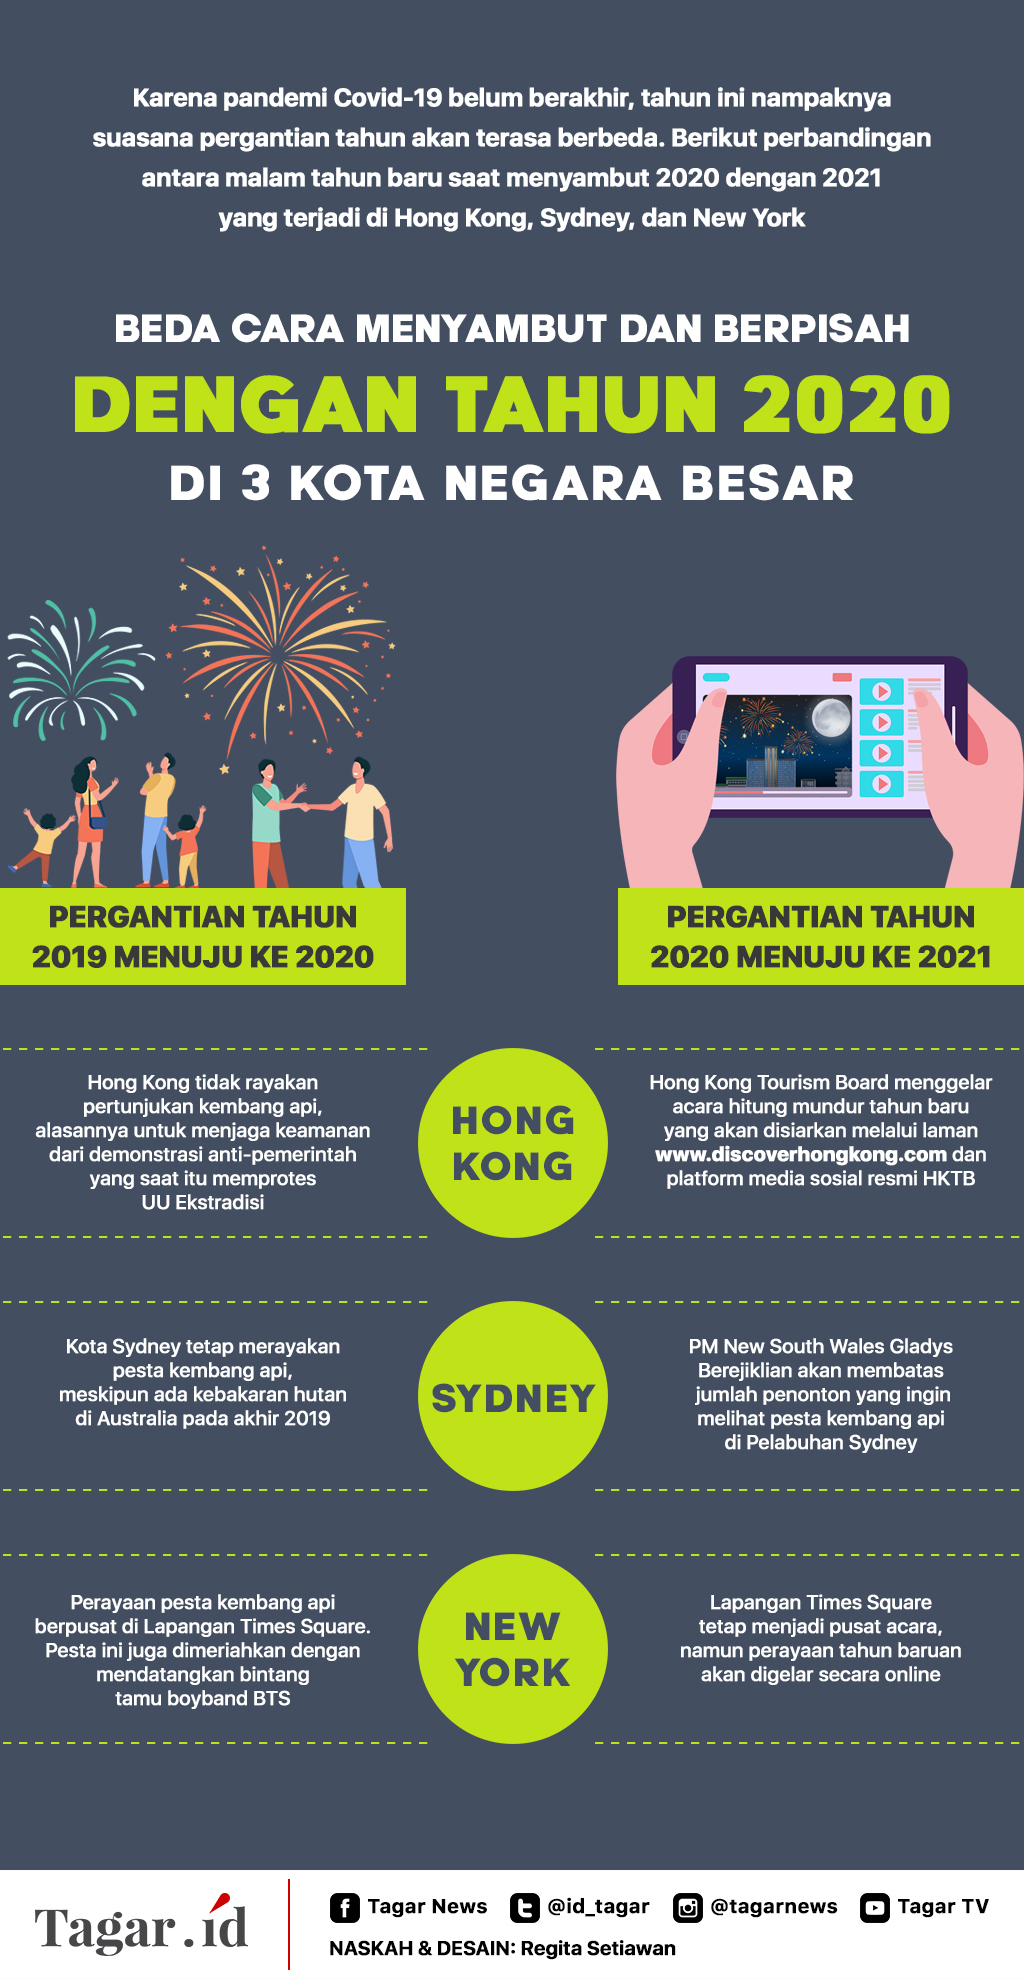 Infografis: Beda Cara Menyambut dan Berpisah dengan Tahun 2020